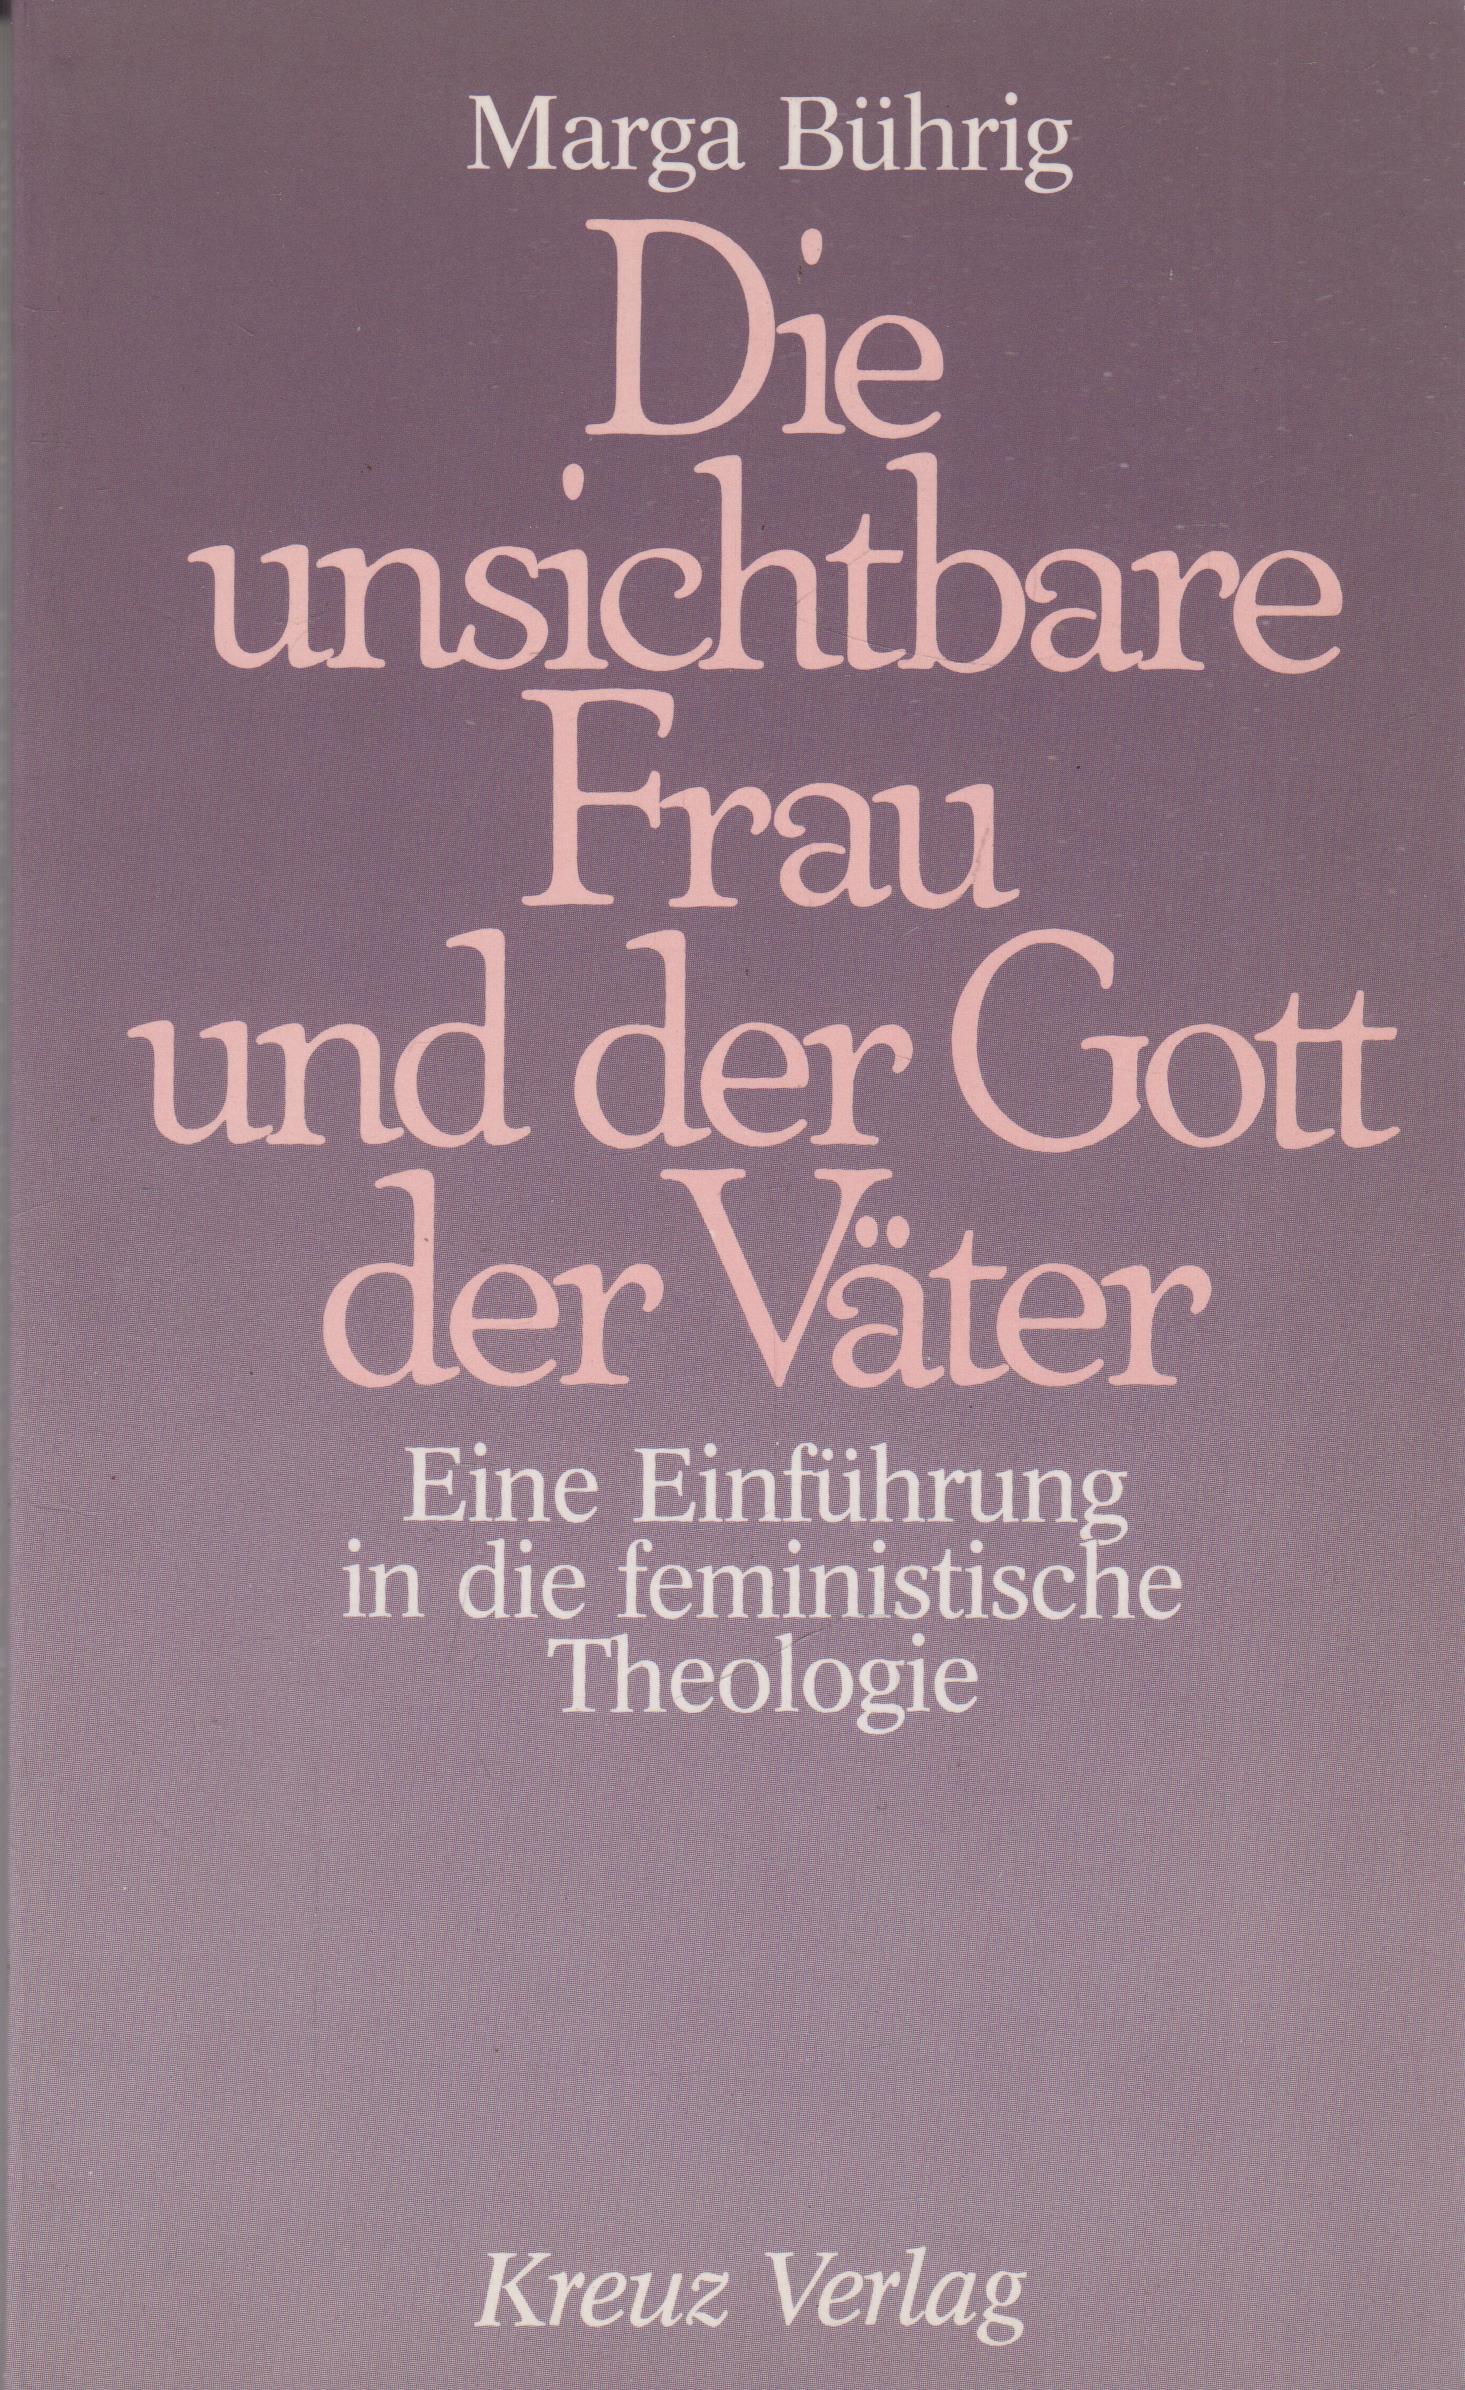 Die unsichtbare Frau und der Gott der Väter Eine Einführung in die feministische Theologie 3. Auflage - Bührig, Marga